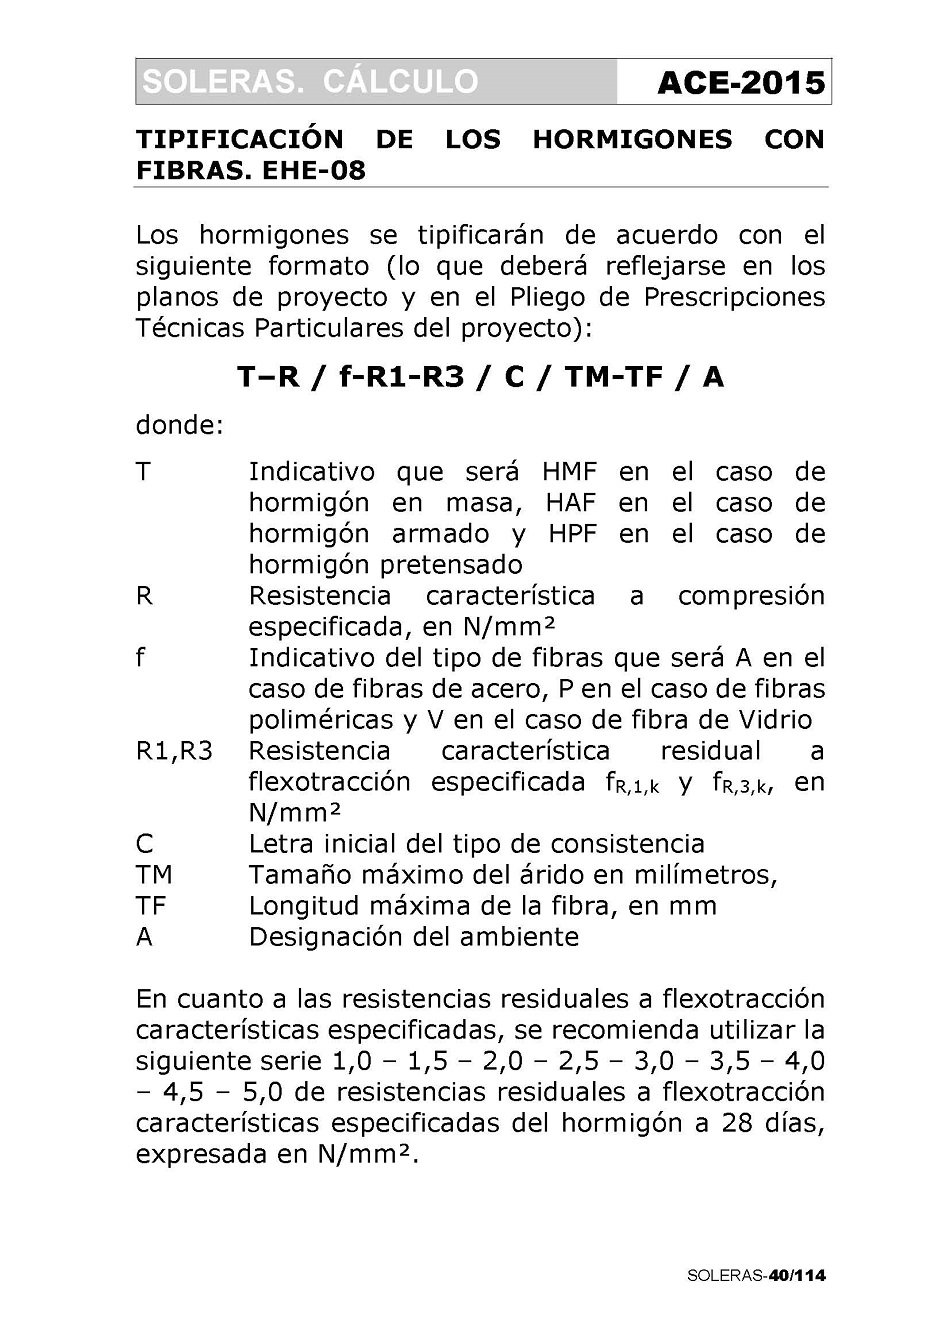 Cálculo de Soleras de Hormigón. Página 40